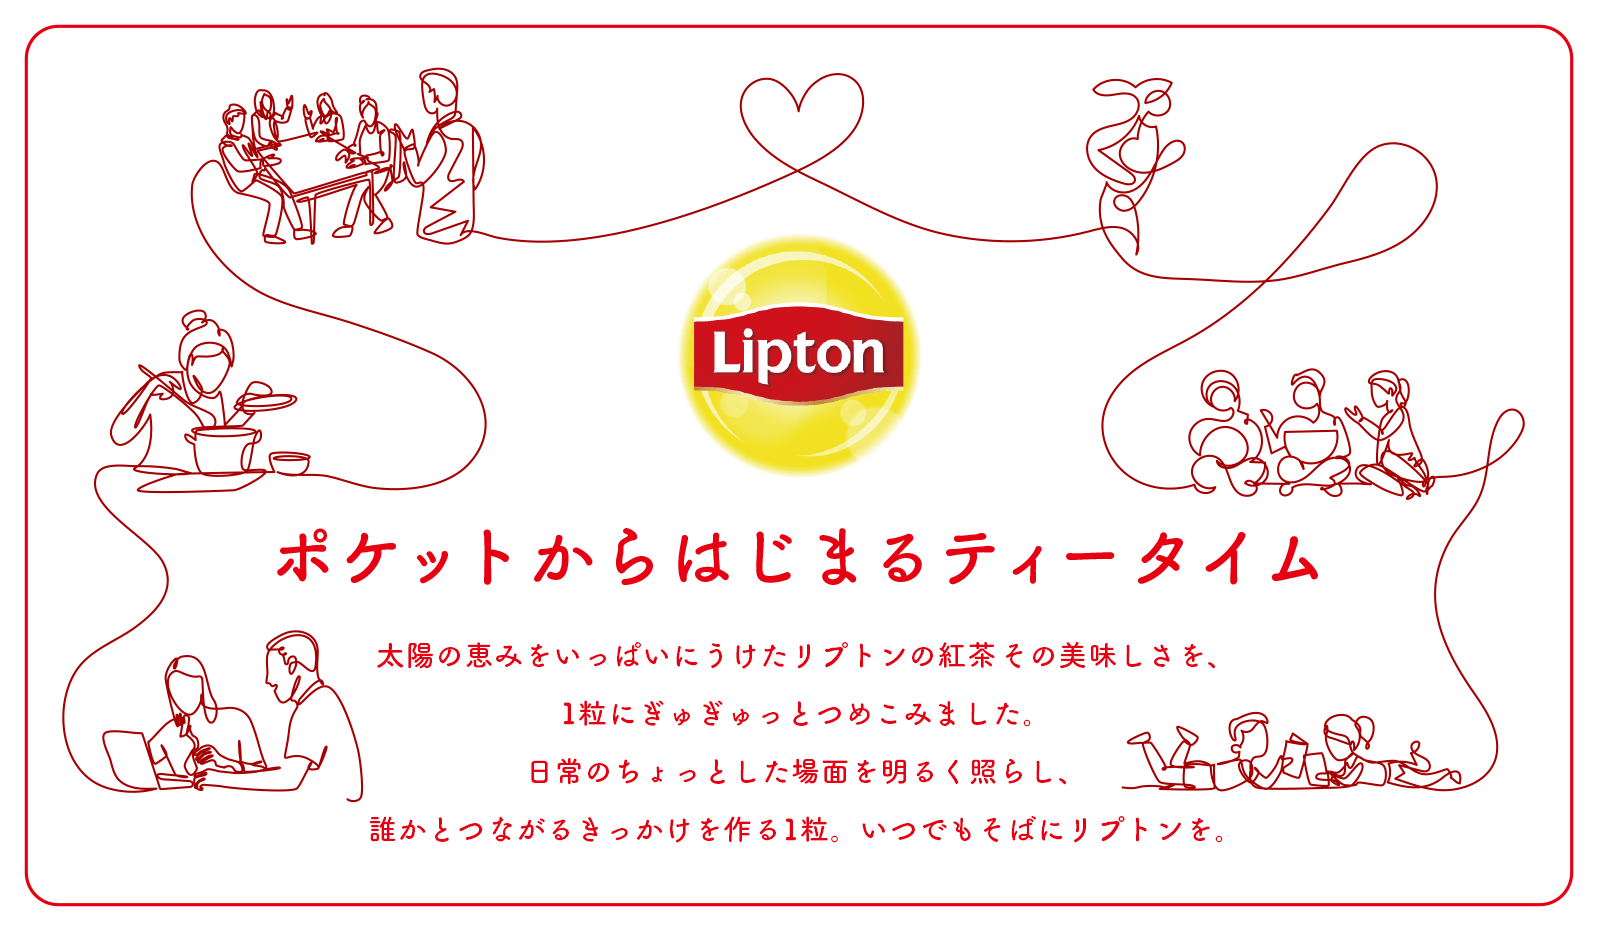 リプトン × Kasugai